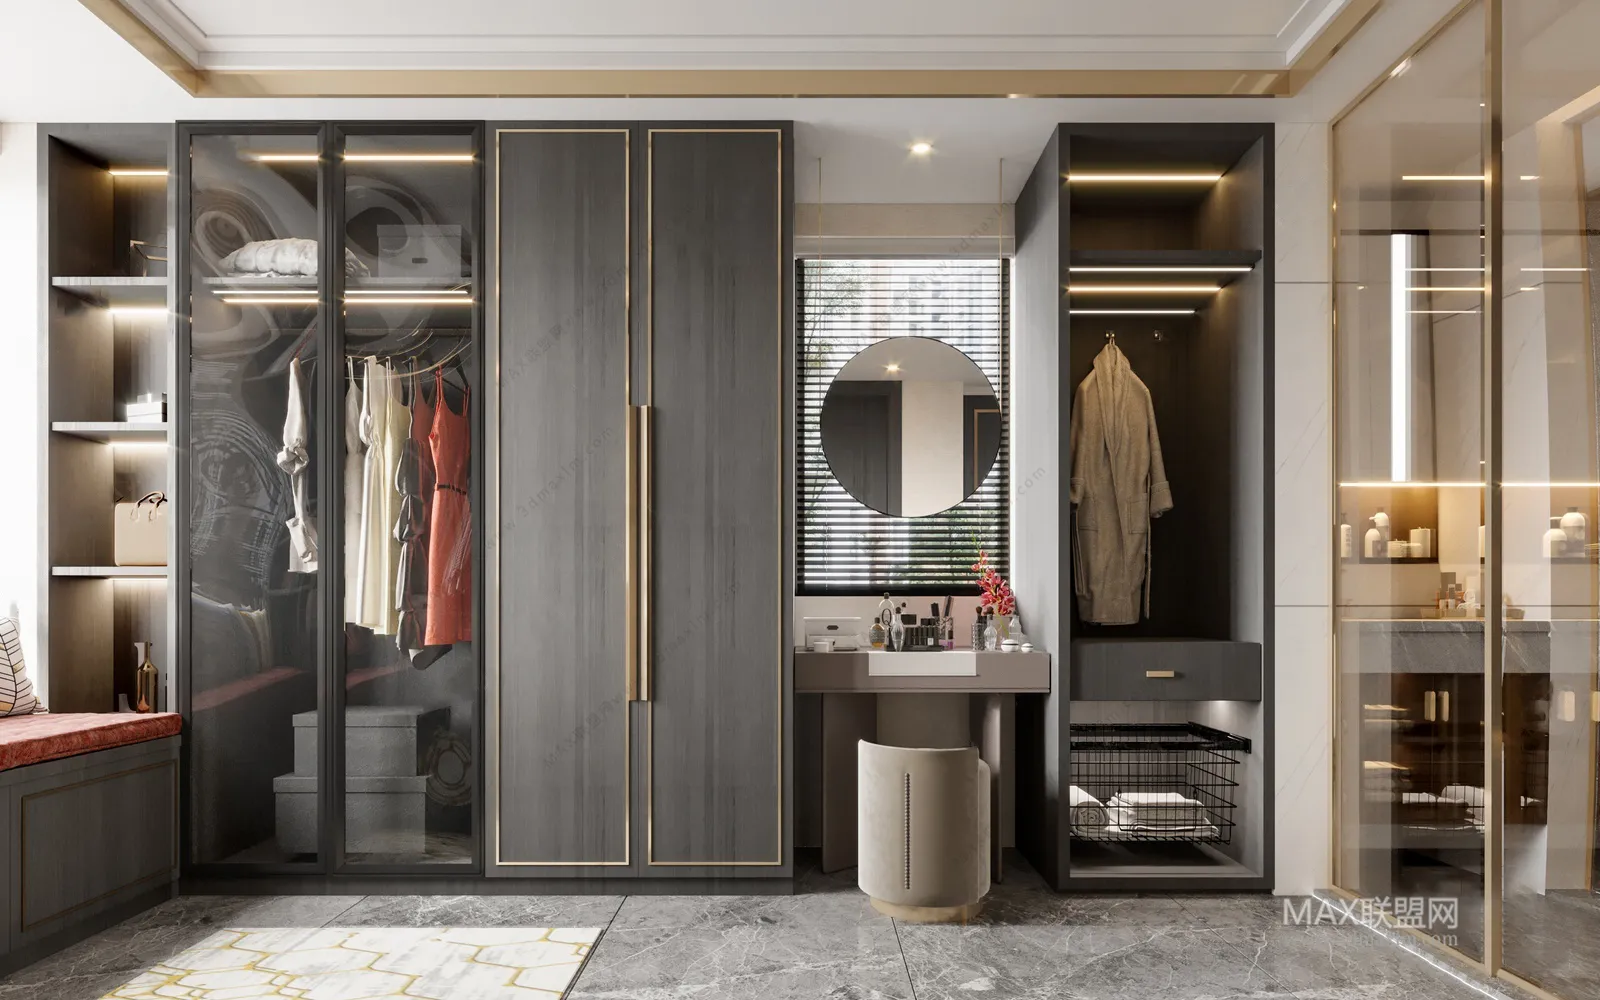 Cloakroom – Interior Design – Modern Design – 001